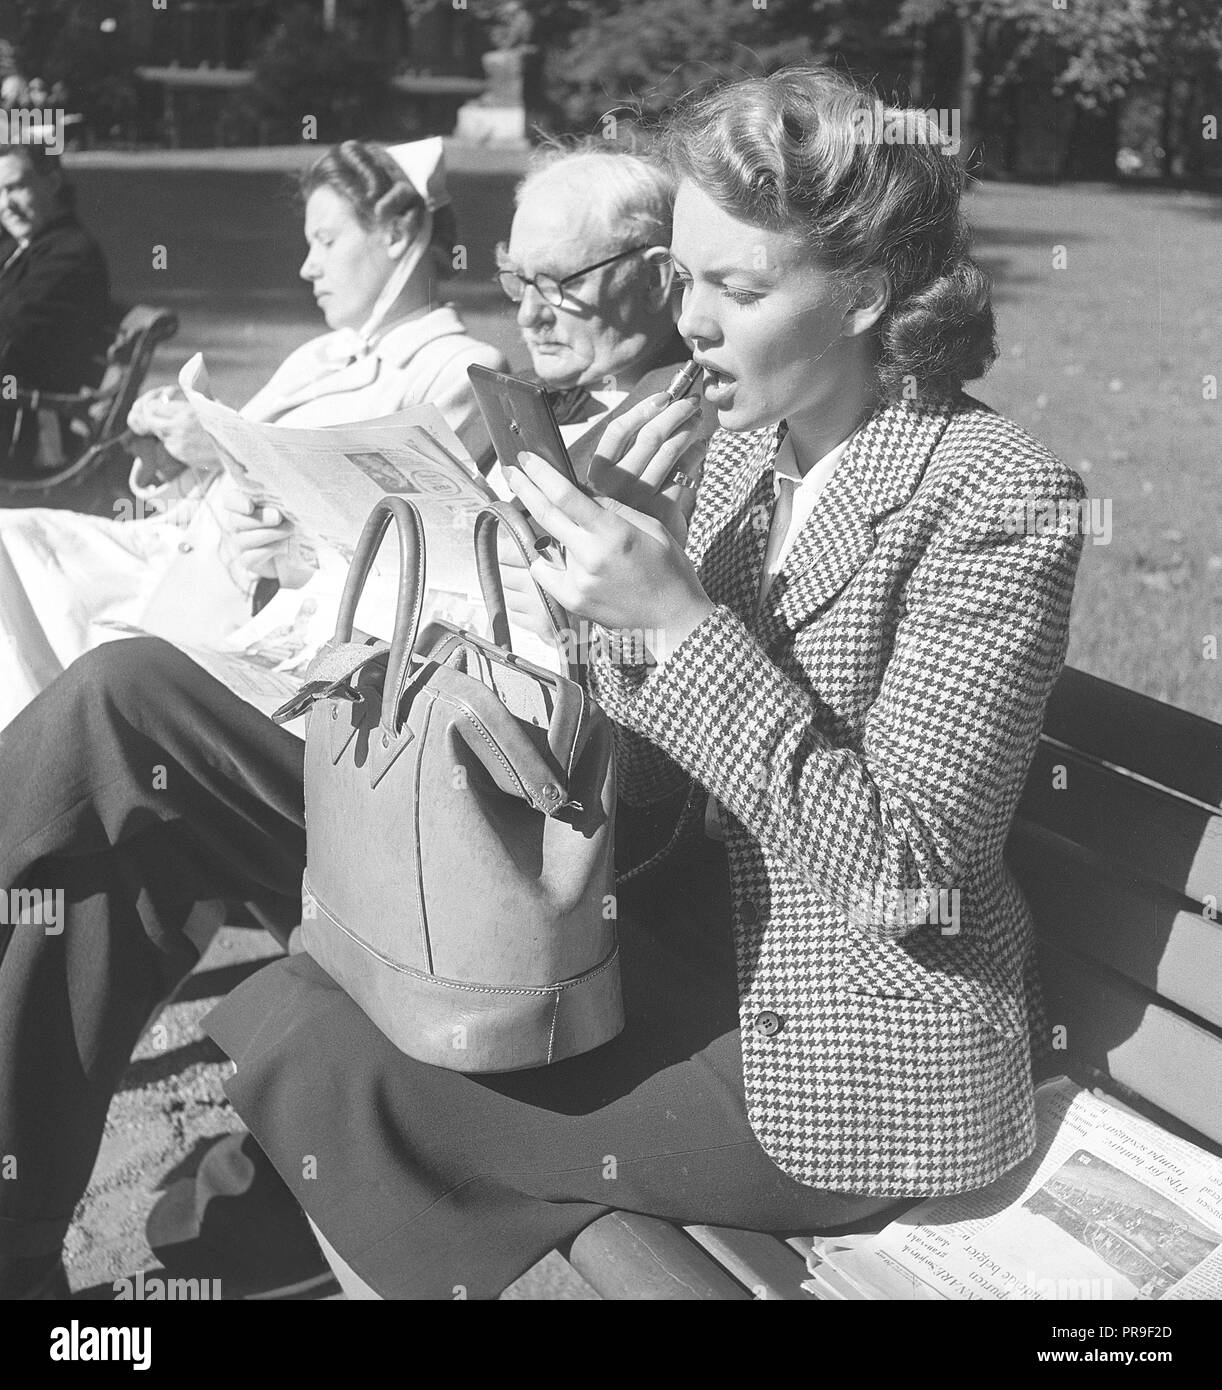 Fare fino a 1940s. La giovane attrice e il modello Haide Göransson, 1928-2008, sta mettendo il rossetto. Lei è seduta su una panchina di una giornata di sole in un parco e accanto a lei siede un anziano gentiluomo e un infermiere in uniforme, della maglieria. Haide ha la borsetta sul suo ginocchio e detiene un specchio tascabile in una mano quando si mette il rossetto. La Svezia 1949. Foto Kristoffersson ref A7-10 Foto Stock